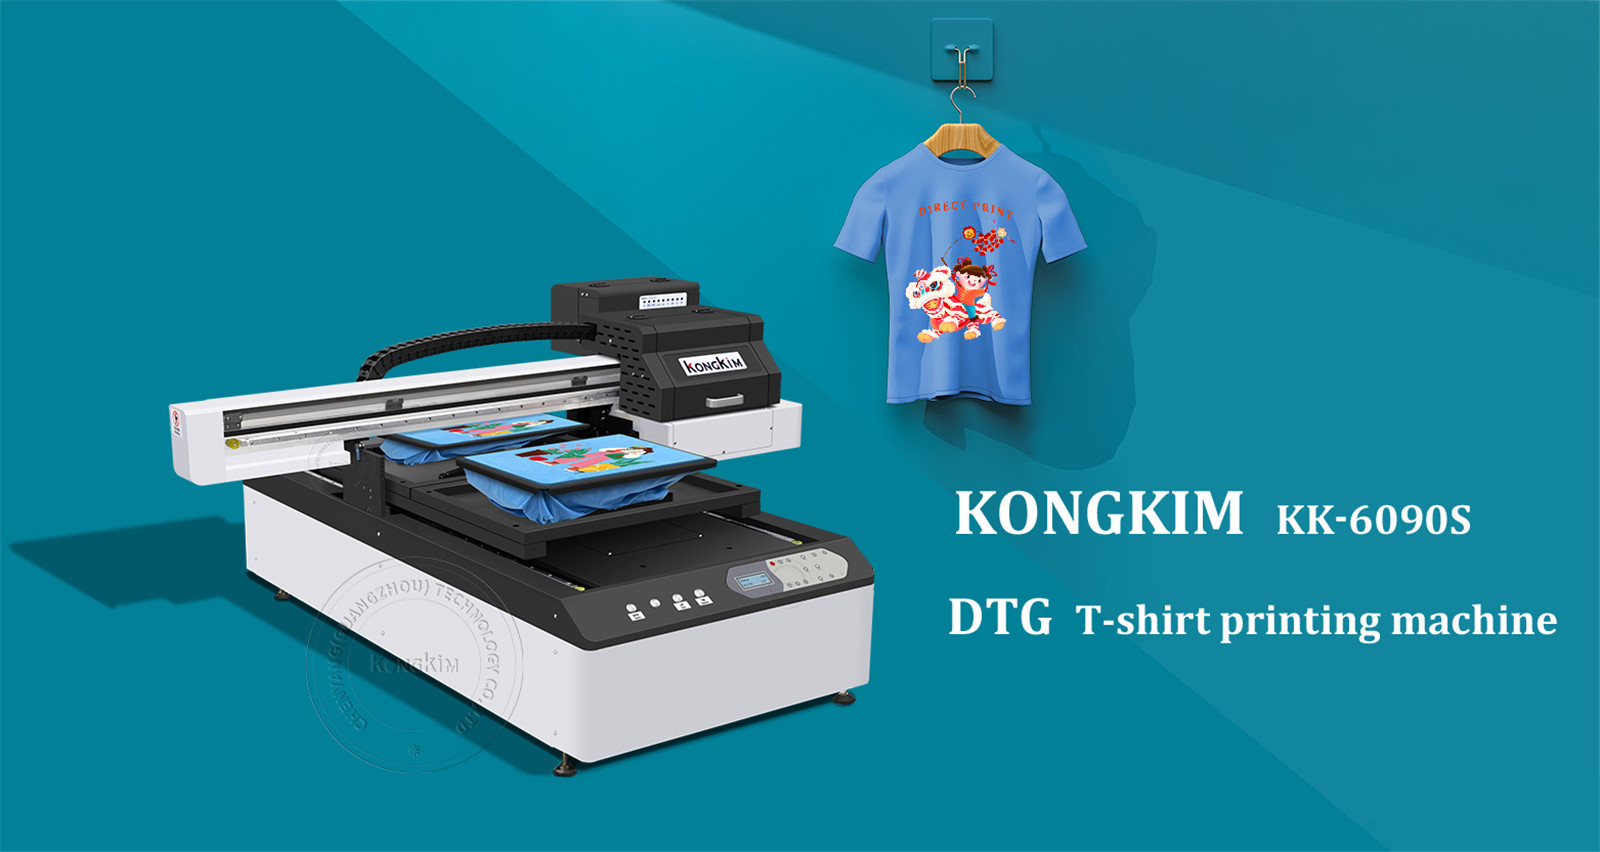 Stampante digitale per magliette DTG aggiornata: perfetta per tutte le magliette di cotone stampate direttamente-02